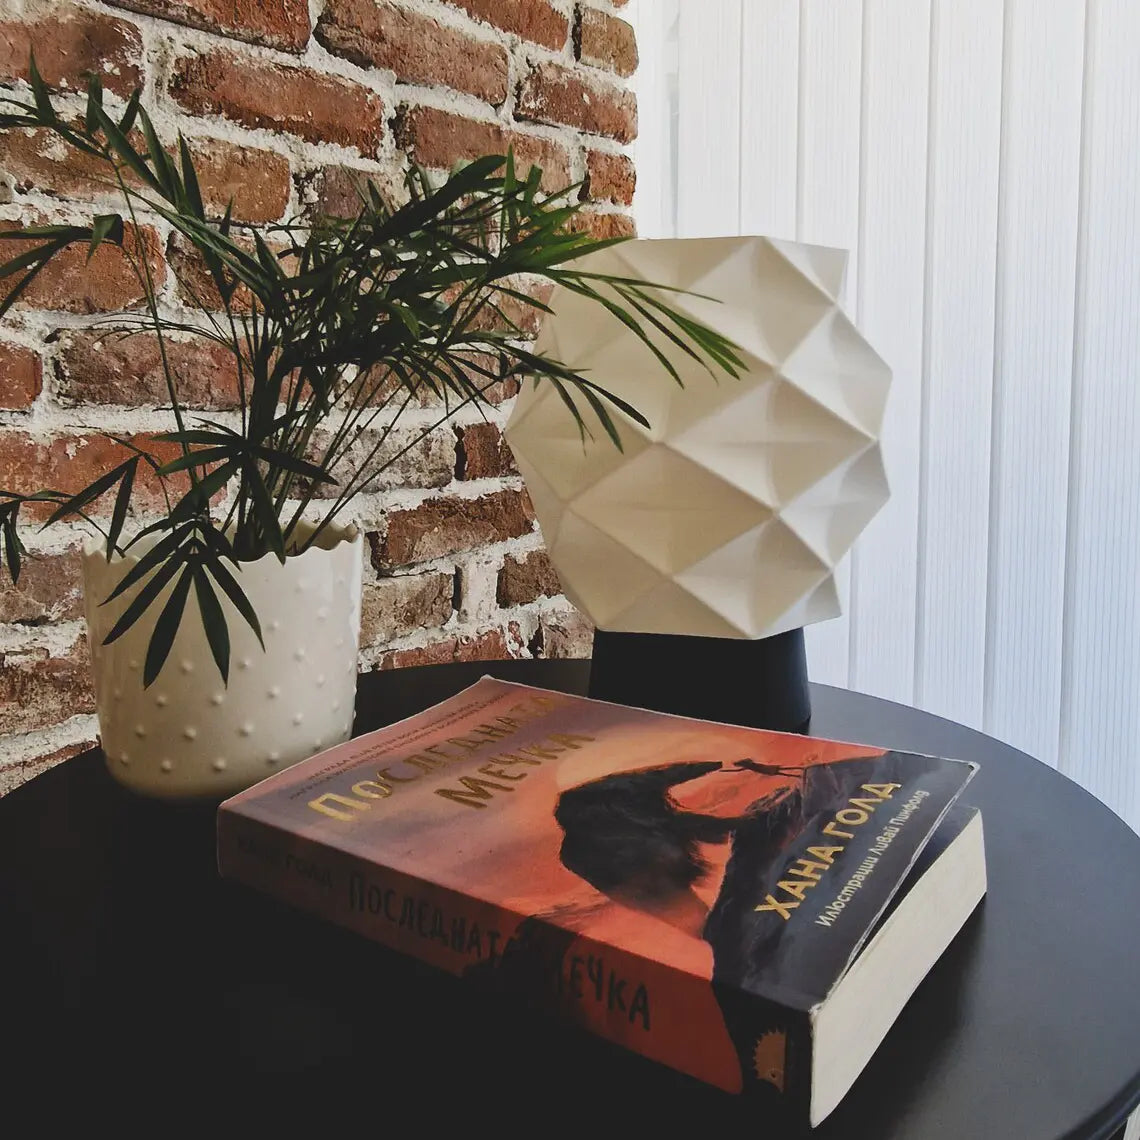 Lampe de table moderne Tetragono - Lampe de bureau/chevet minimaliste